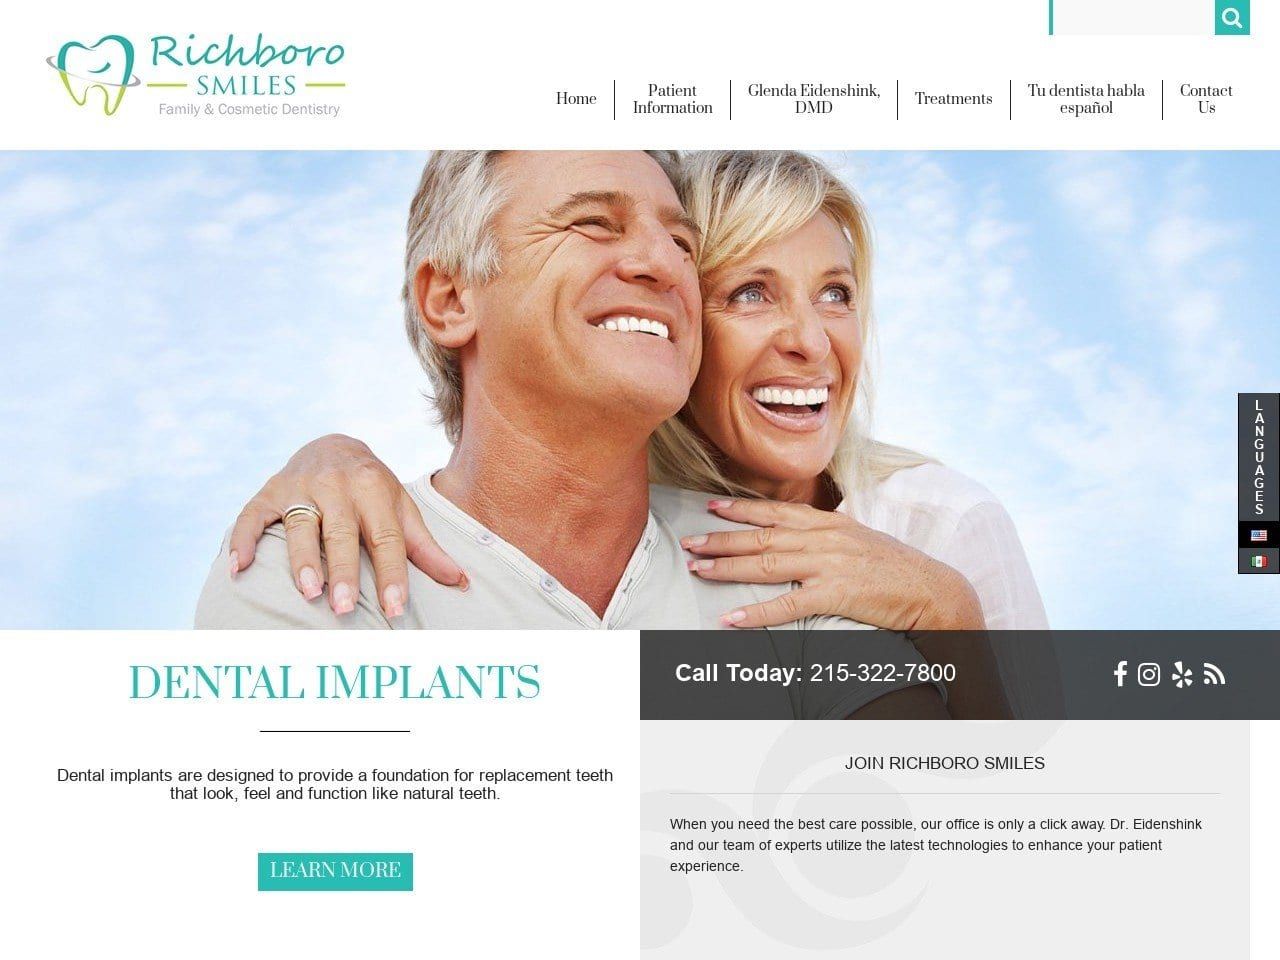 Richboro Smiles Website Screenshot from richborosmiles.com